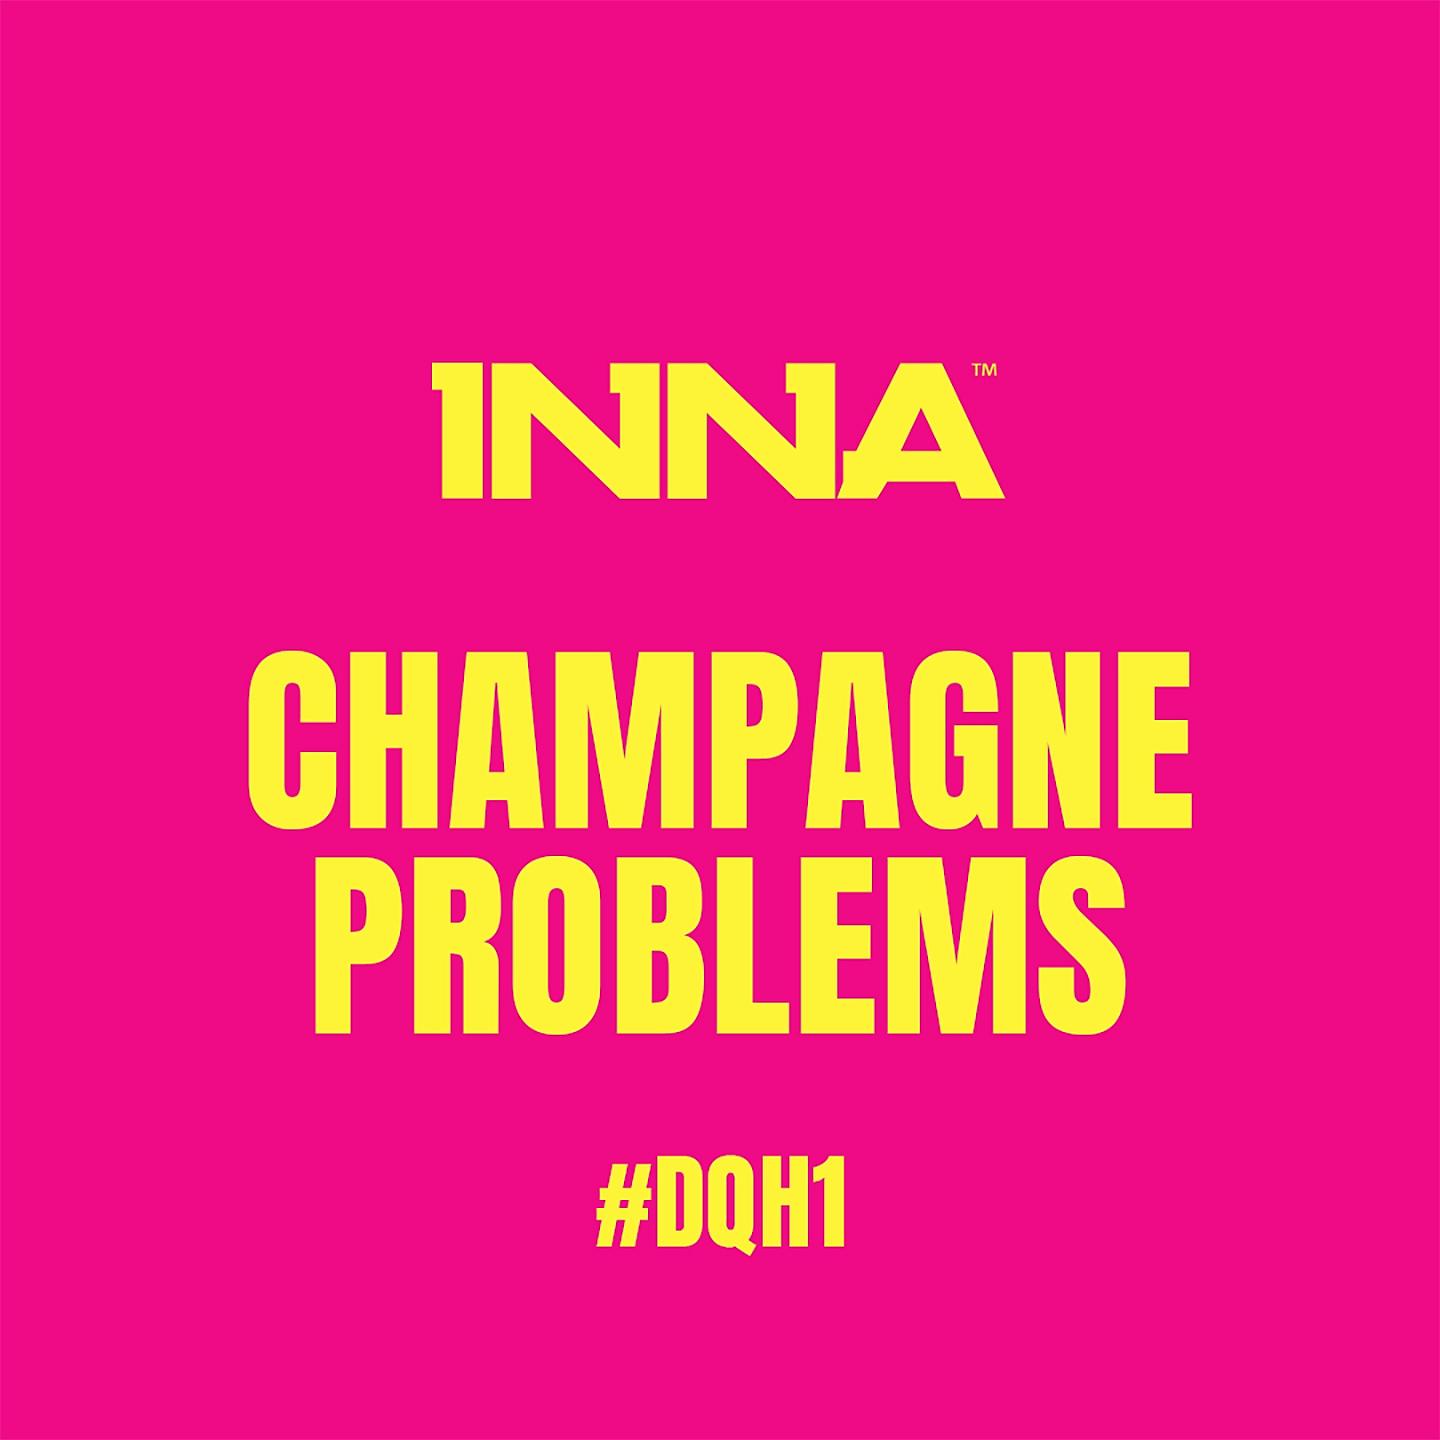 Champagne problems. Inna Champagne problems. Inna Champagne problems #dqh1. Inna - Fire & Ice. Inna - always on my Mind.